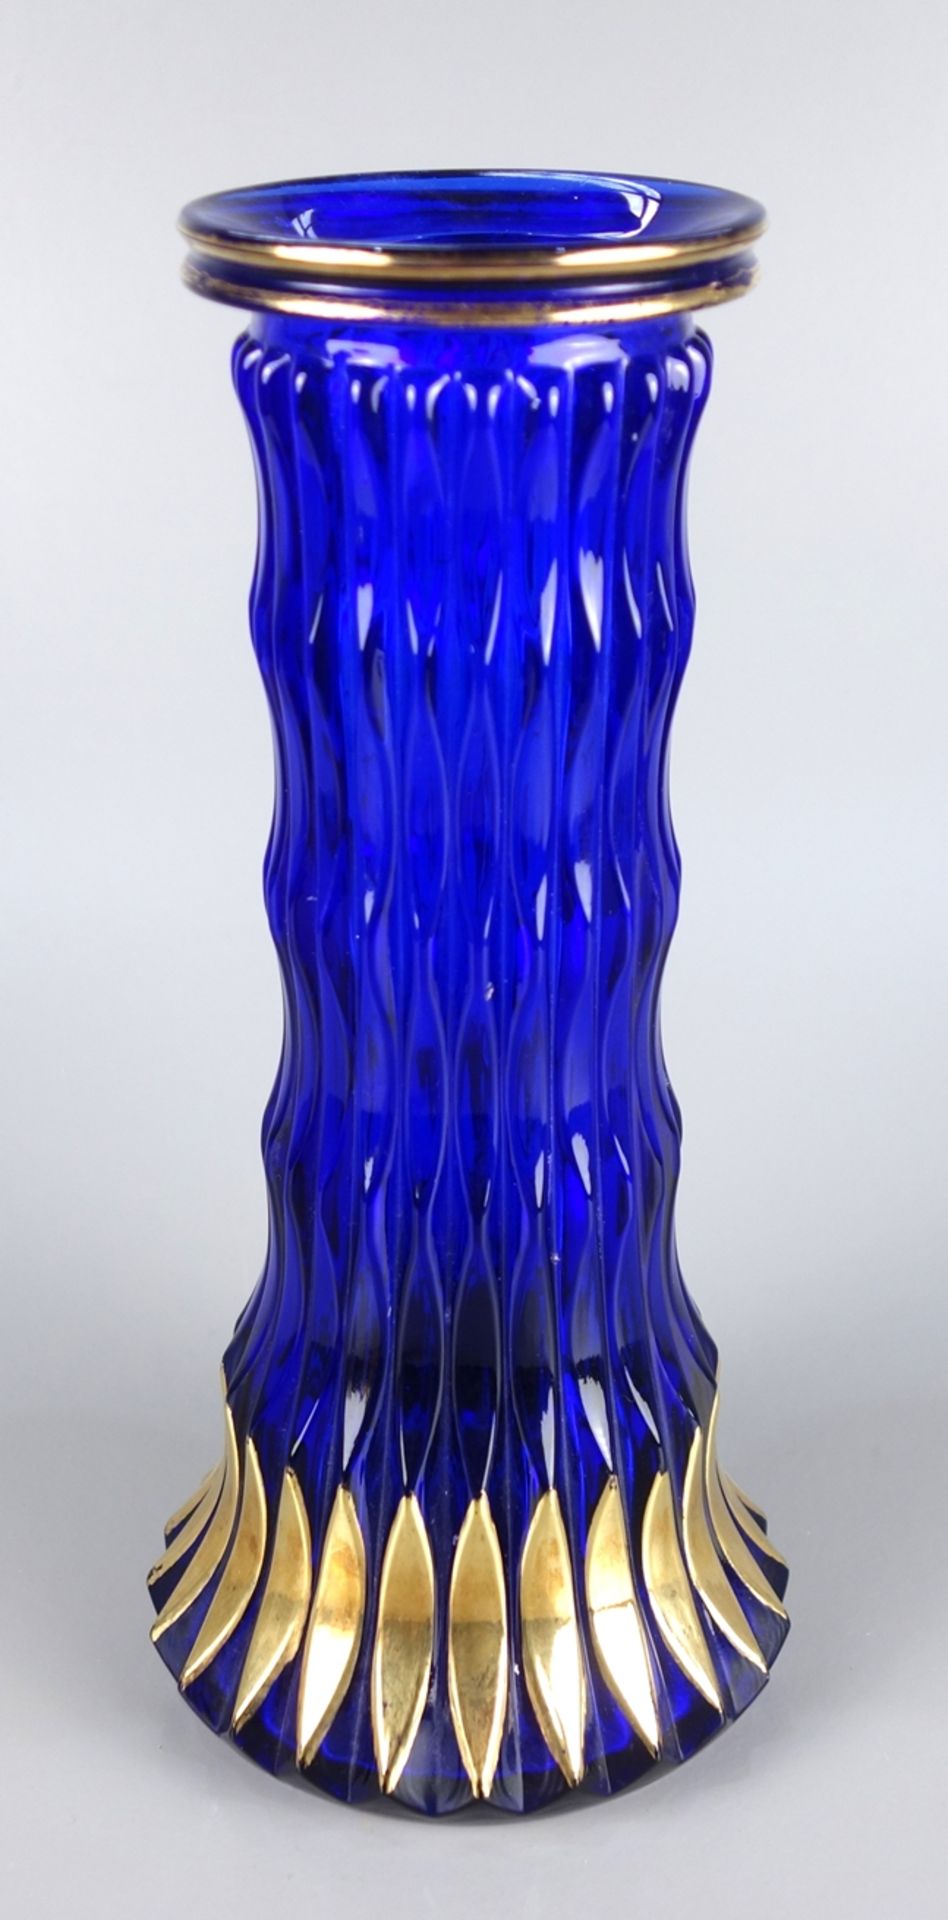 Art- Déco- Vase, Böhmen, 1930, Blauglas mit Goldkonturen, konische, gewellte Wa